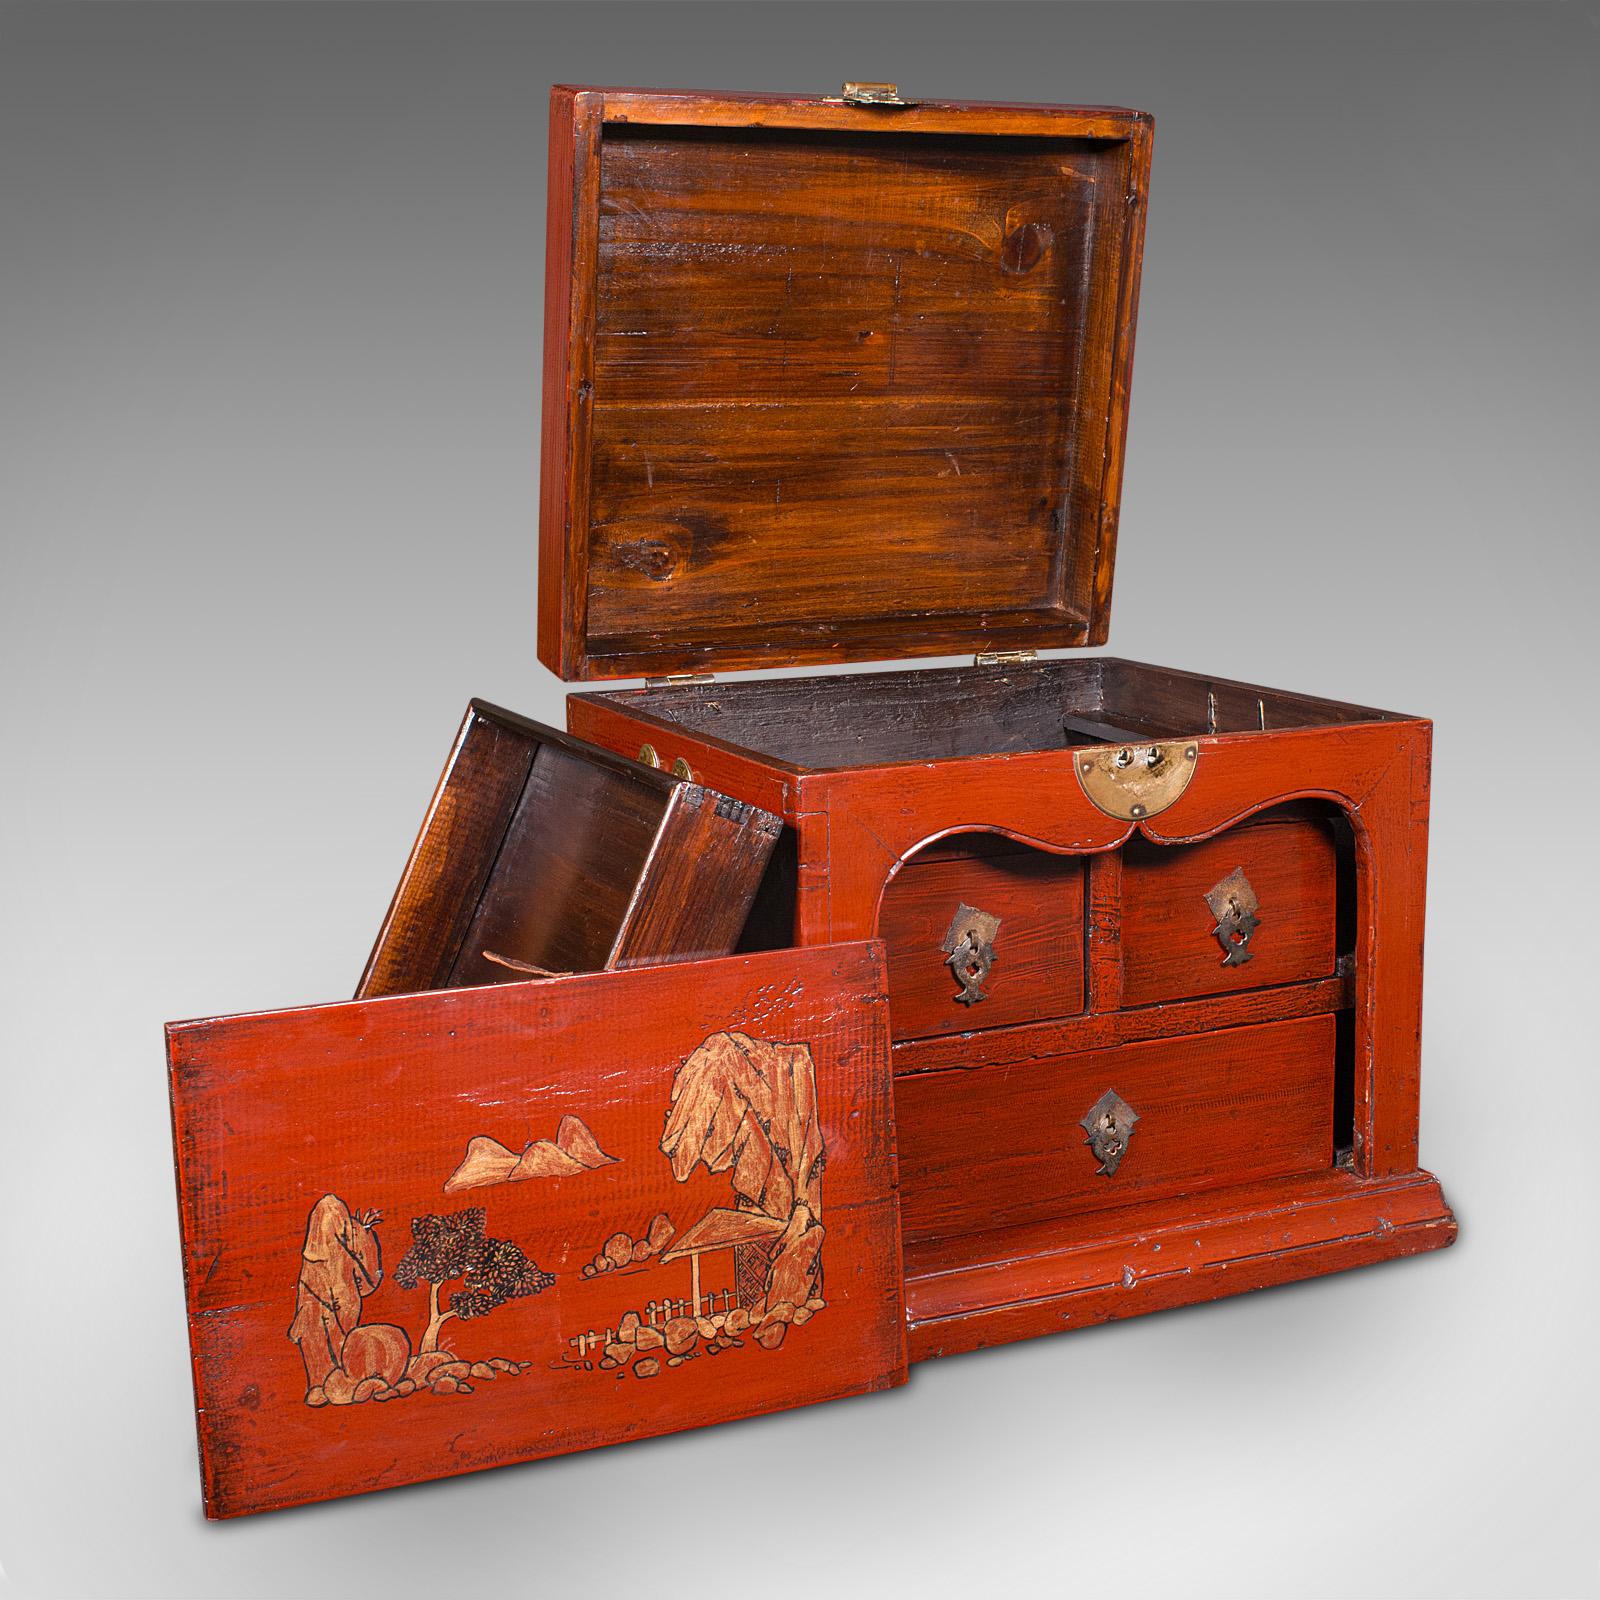 Dies ist eine antike Schmuckschatulle für unterwegs. Ein chinesischer Campaigner-Koffer aus lackiertem Kiefernholz aus der spätviktorianischen Zeit, um 1900.

Wunderschönes Beispiel für rot lackiertes Kunsthandwerk
Mit wünschenswerter Alterspatina